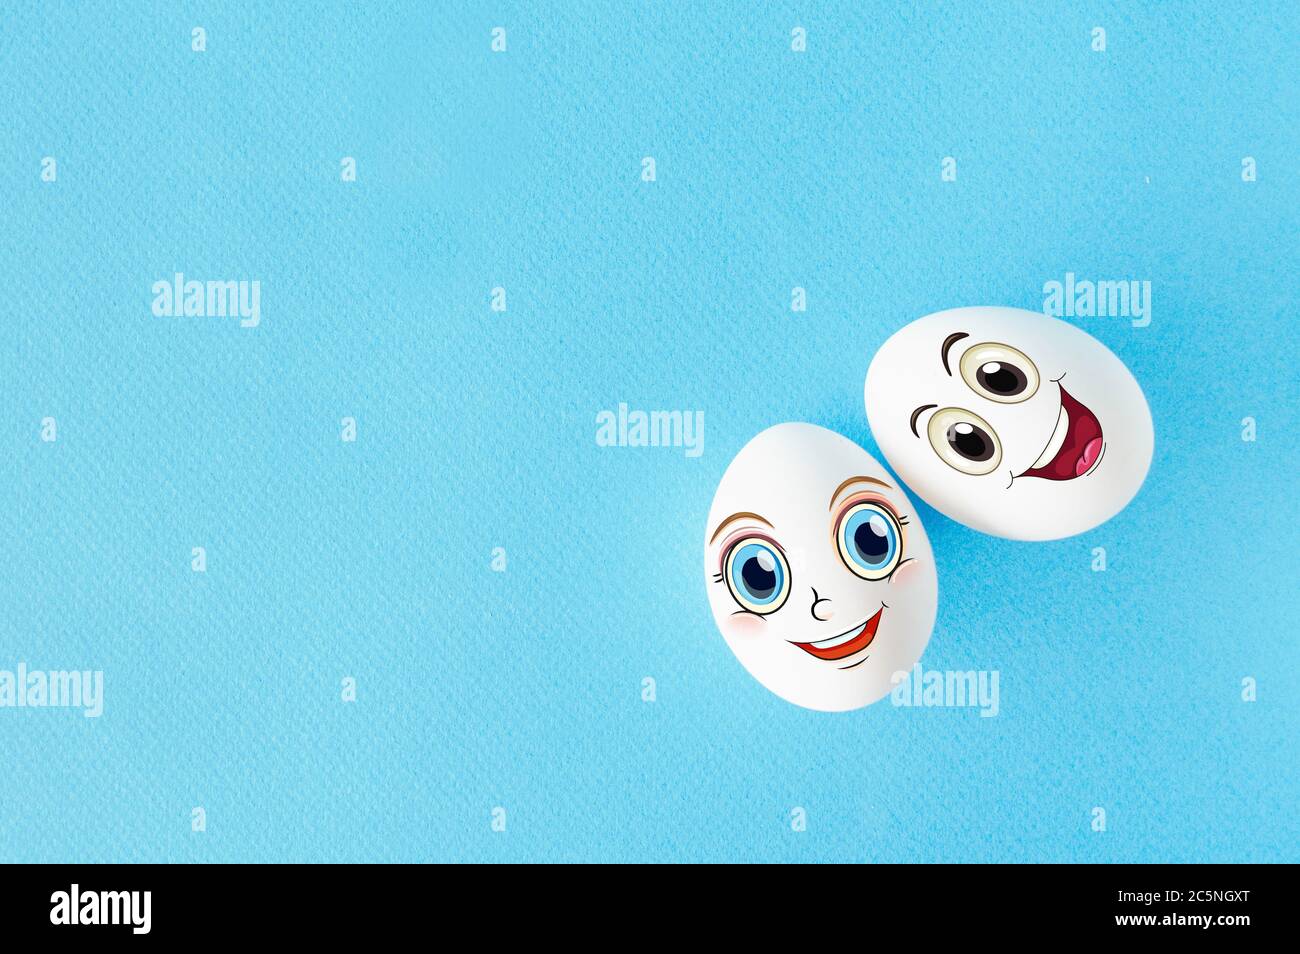 Pareja huevos con el concepto de cara feliz por amor, fondo azul con espacio vacío Foto de stock